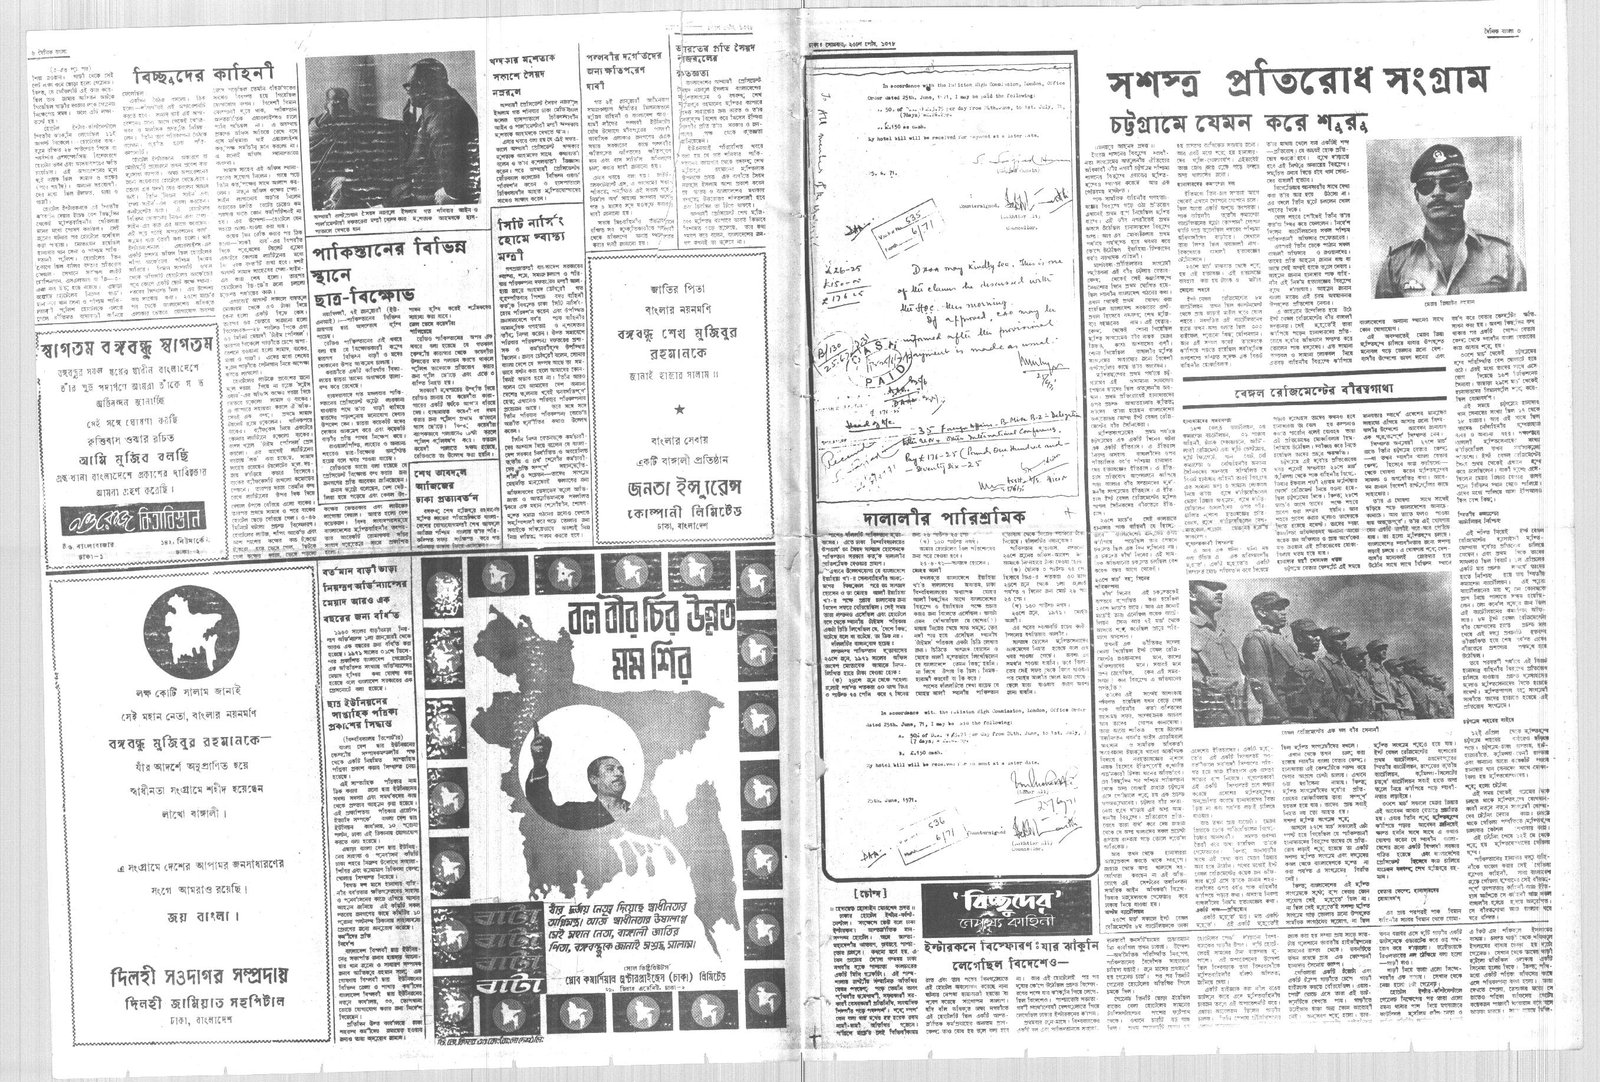 11JAN1972-DAINIK BANGLA-Regular-Page 3 and 6